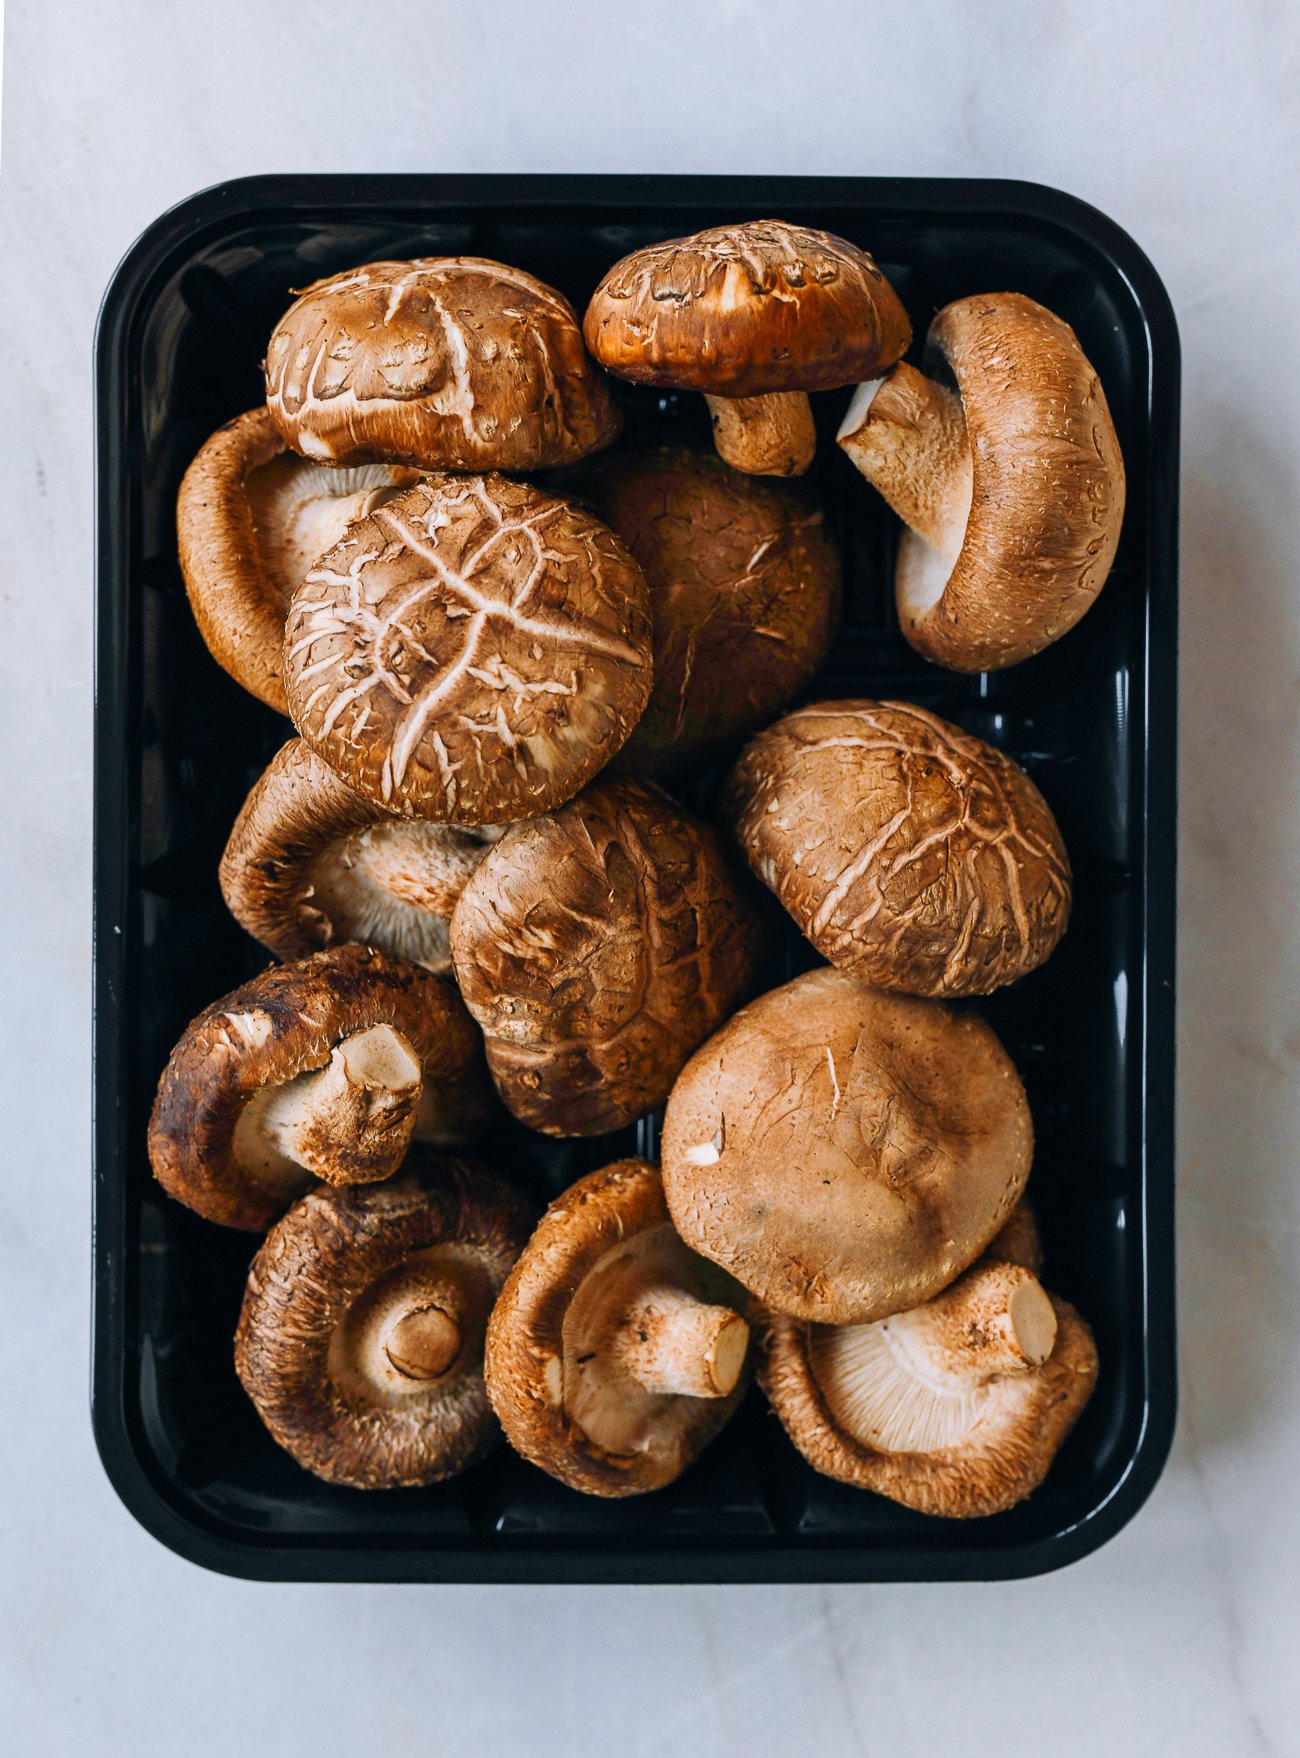 shiitake mushrooms in a tray